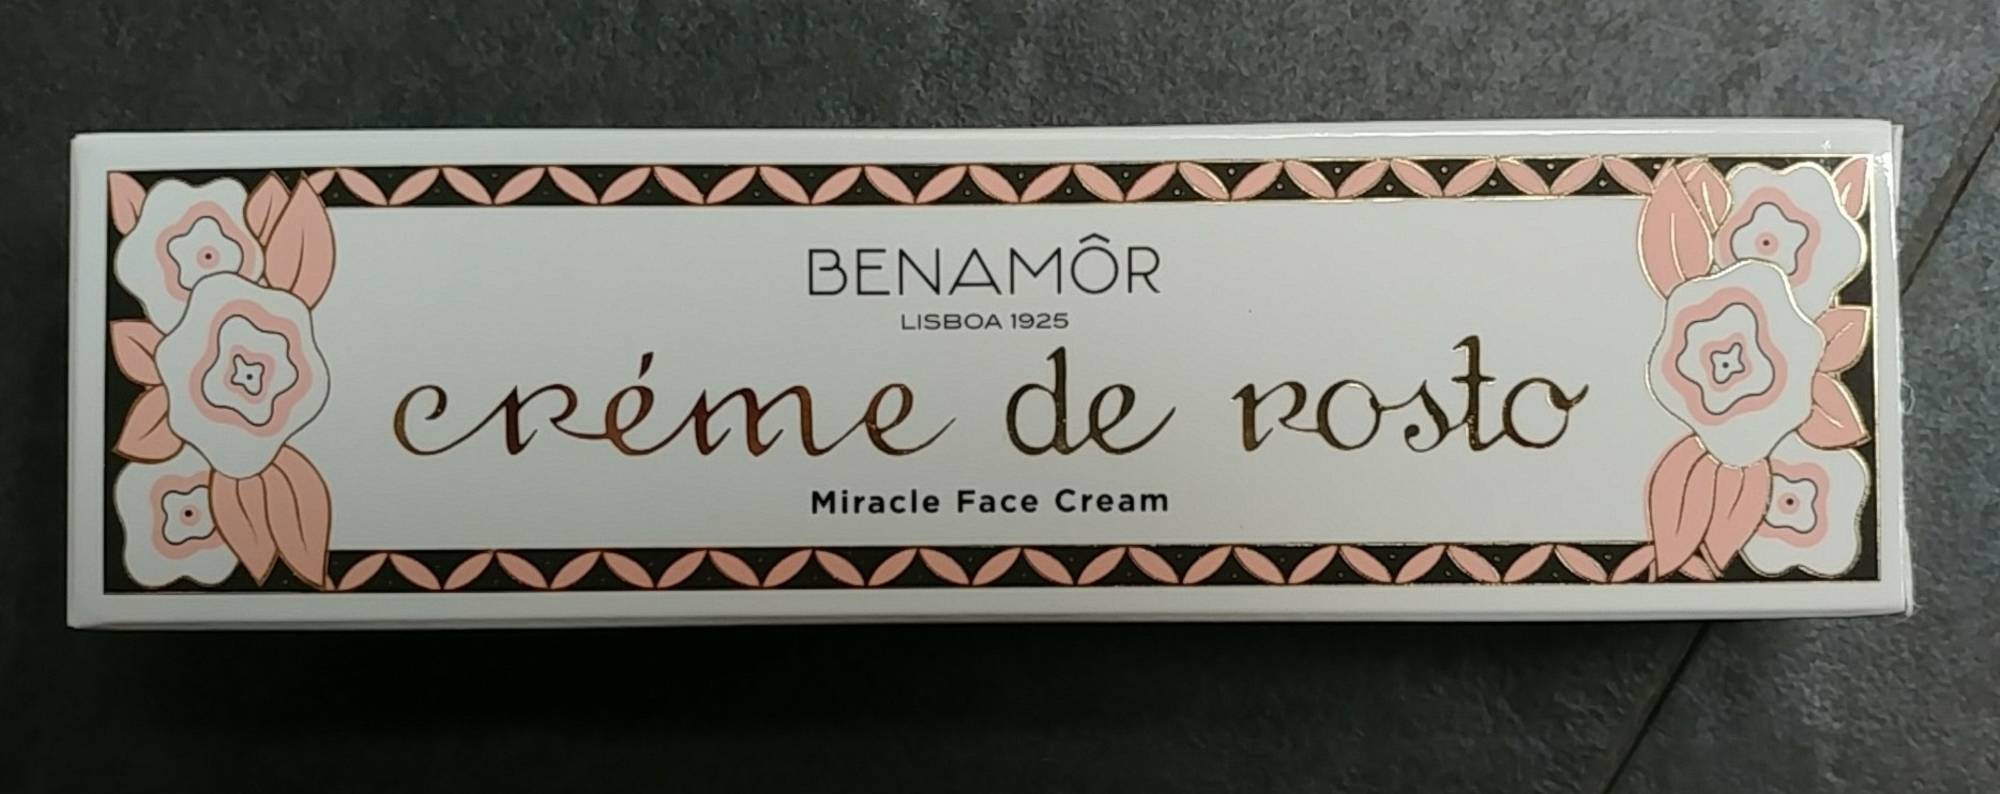 BENAMÔR - Crème de Rosto - Miracle face cream